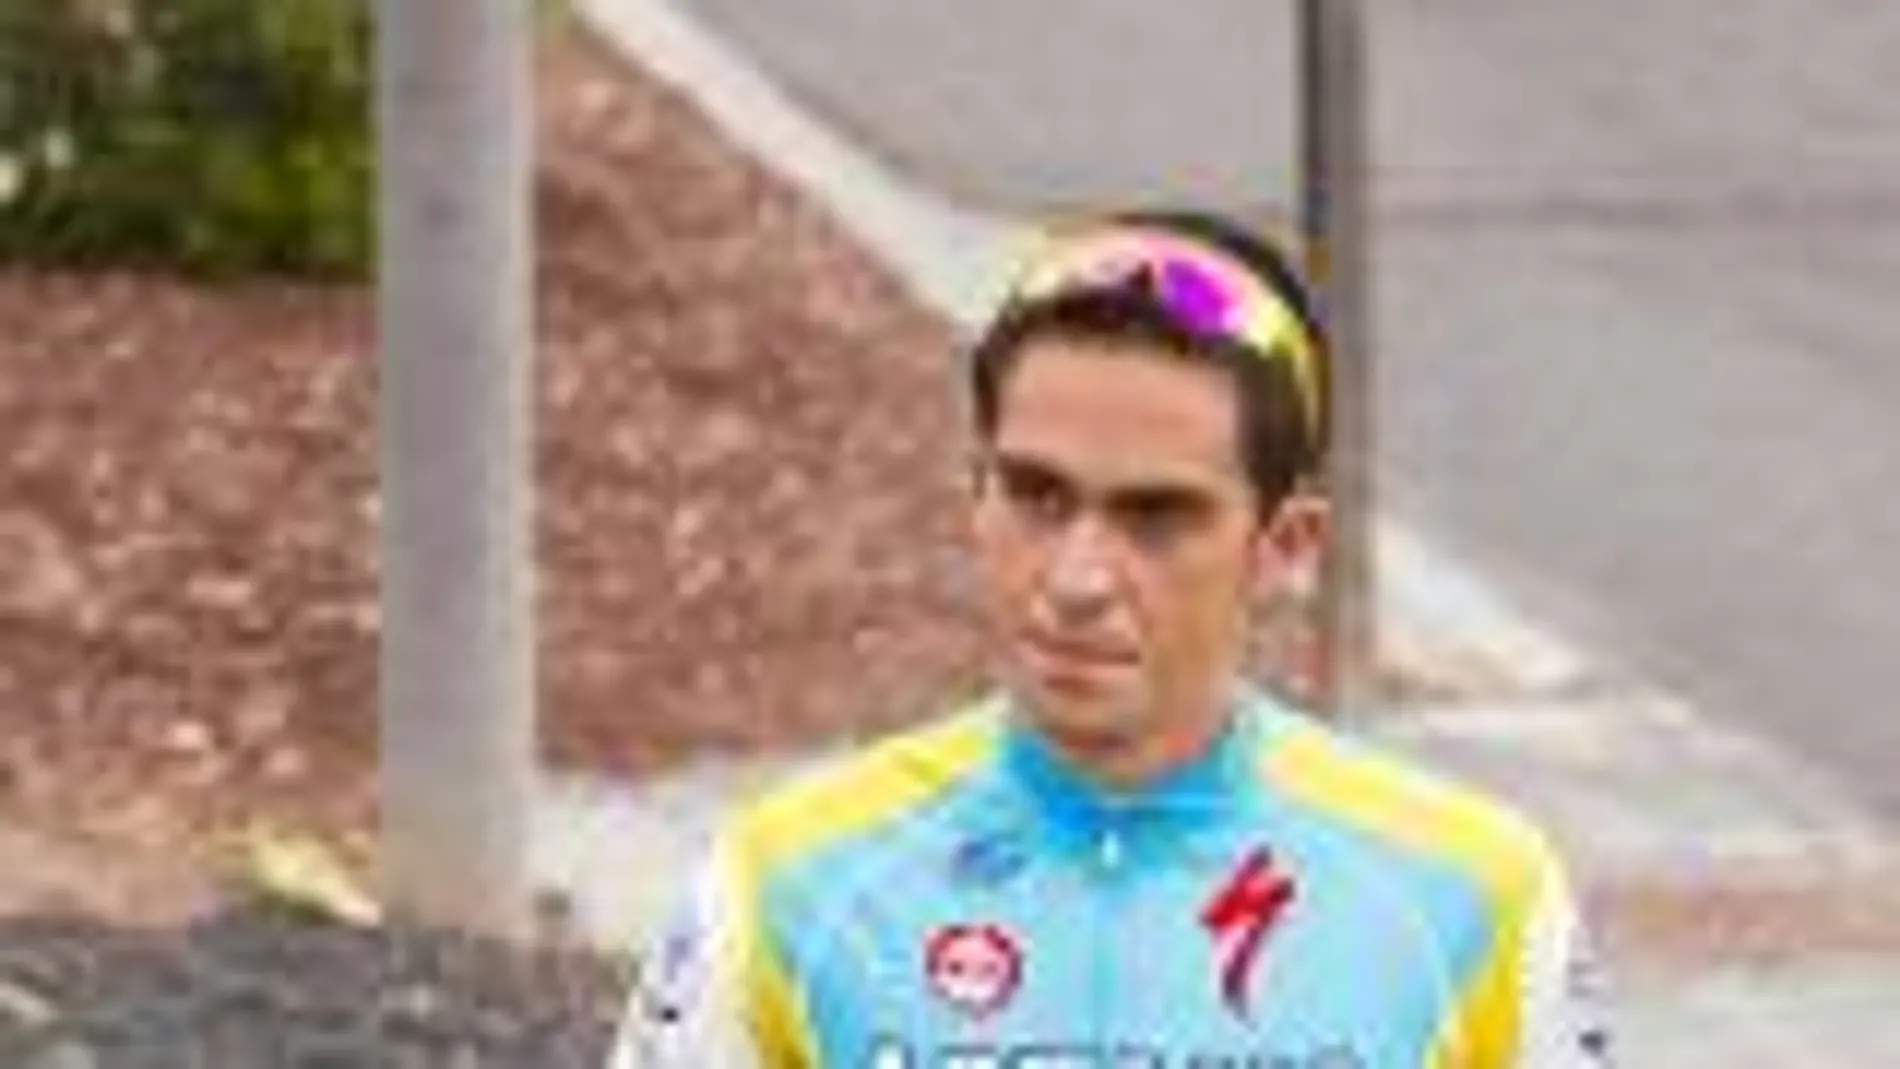 Contador, del Astaná hasta el 31 de diciembre, en Fuerteventura